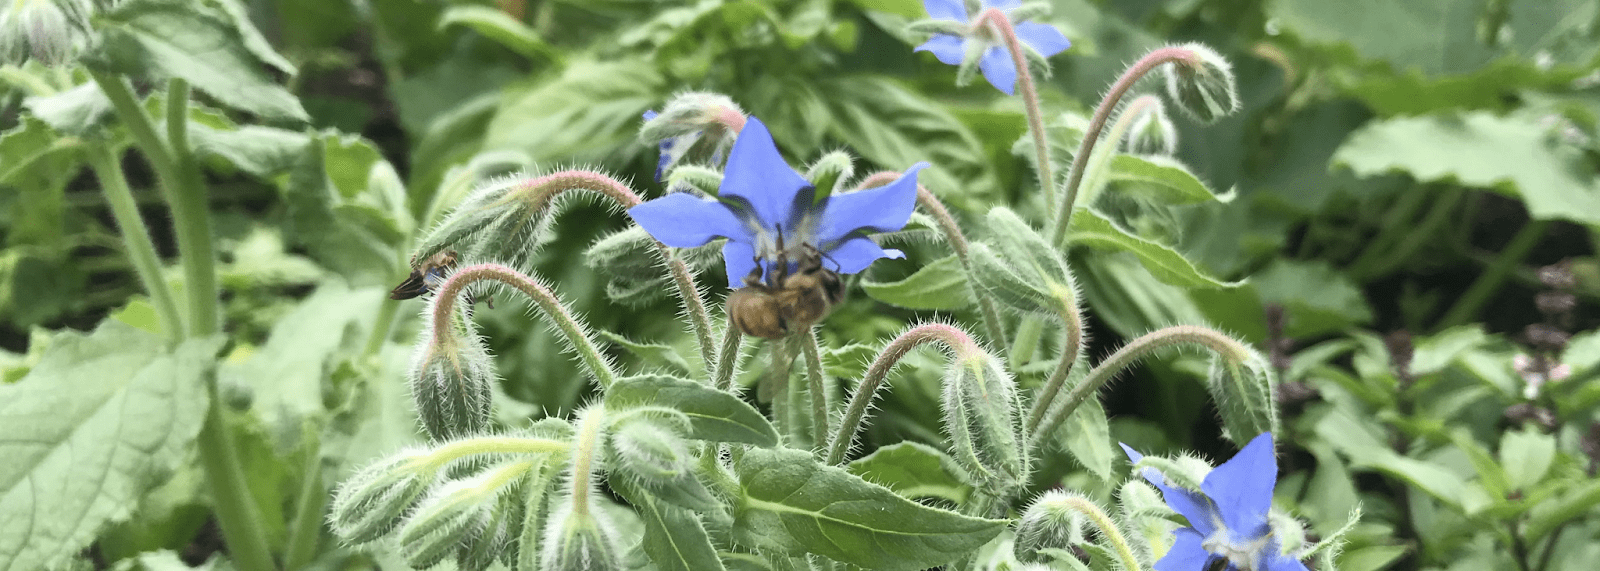 Una imagen de ancho de encabezado de una flor color bígaro, reducida. La abeja apenas se puede ver.